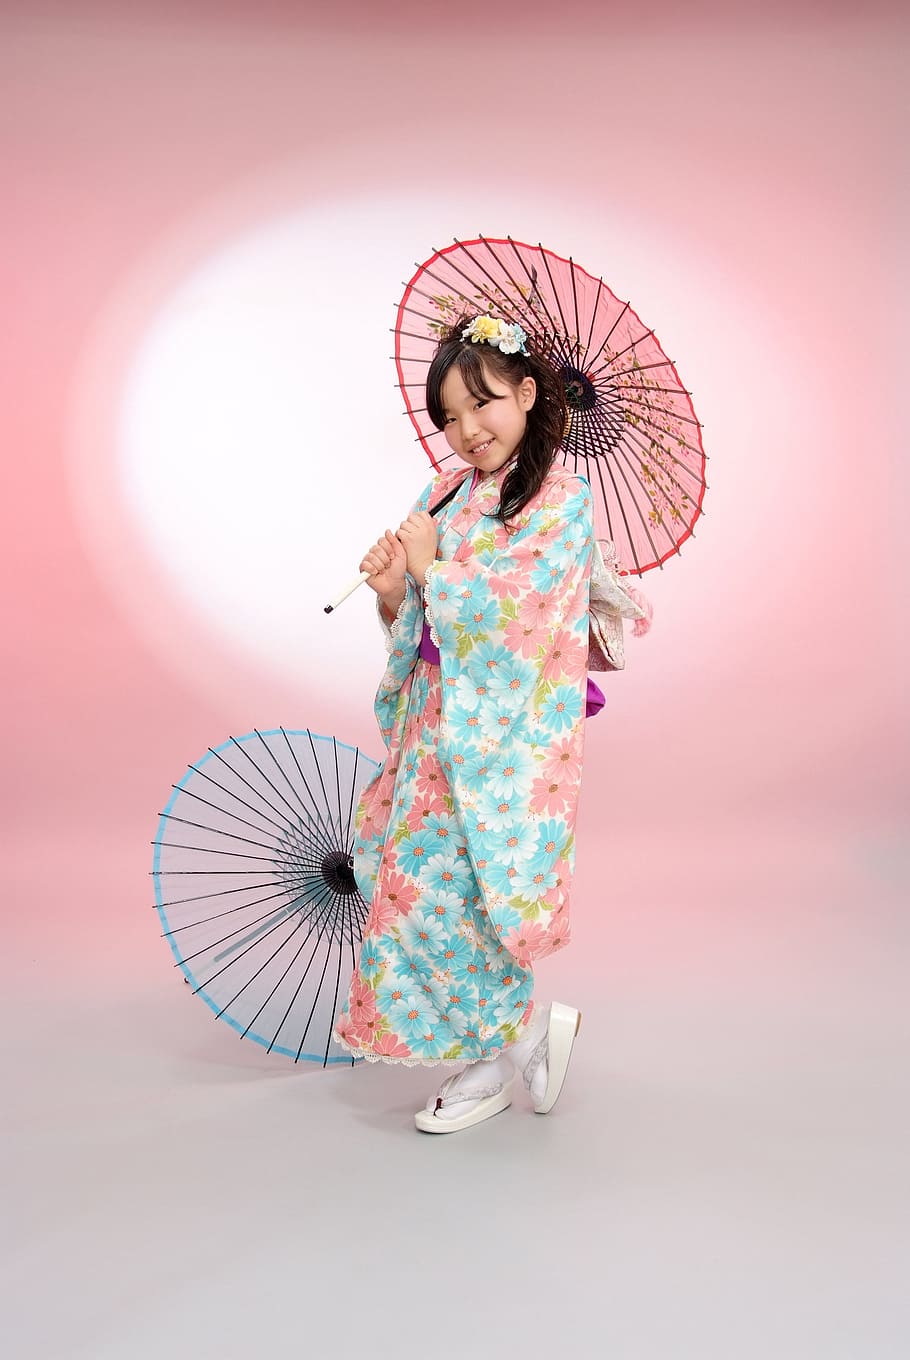 gadis, mengenakan, kimono, memegang, payung, anak-anak, upacara umur, satu orang, panjang penuh, pakaian tradisional